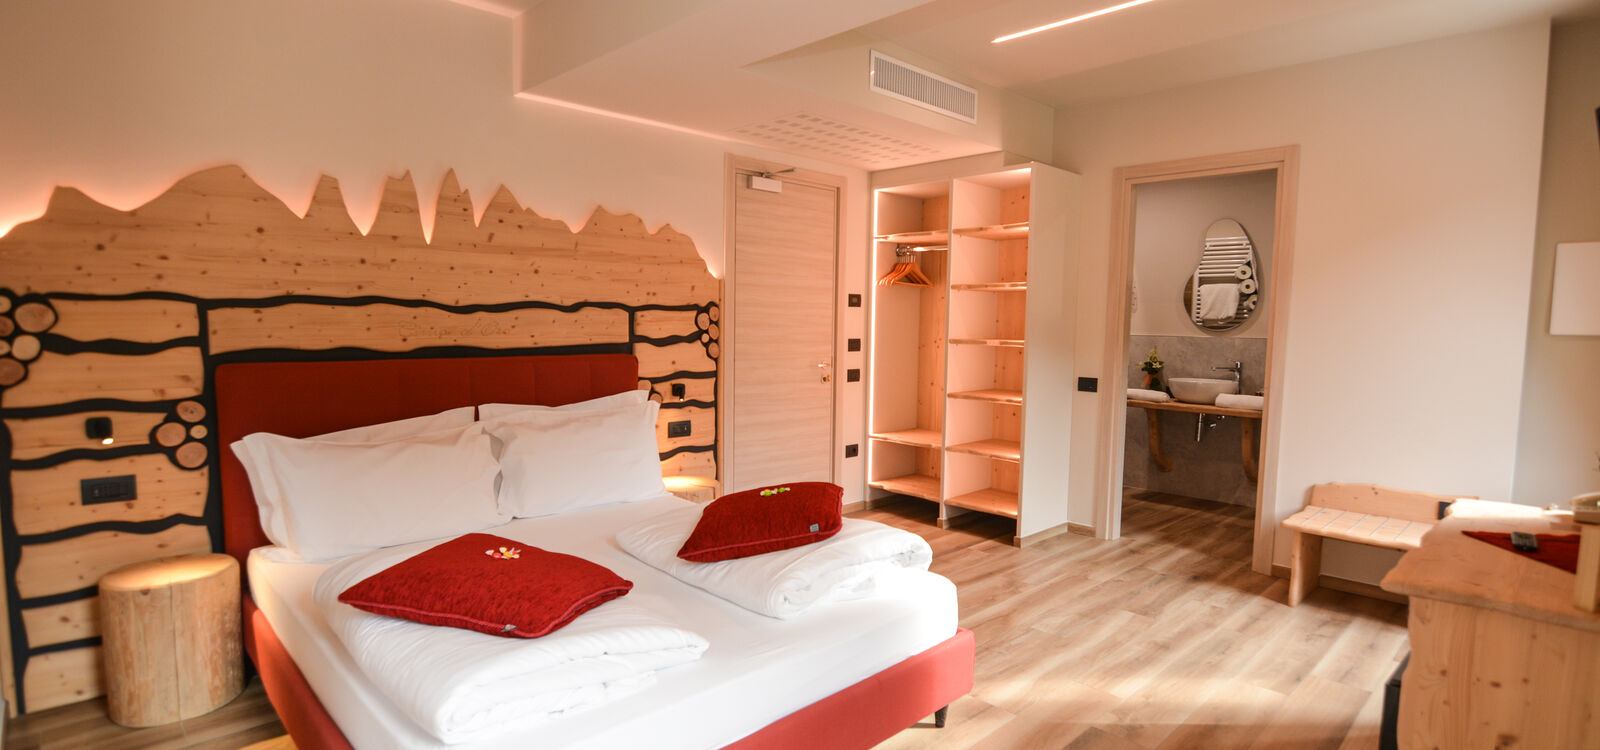 Hotel Cima d'Oro 3 stelle vicino al lago di Ledro, Trentino Valle di Ledro - Suite Vista Lago